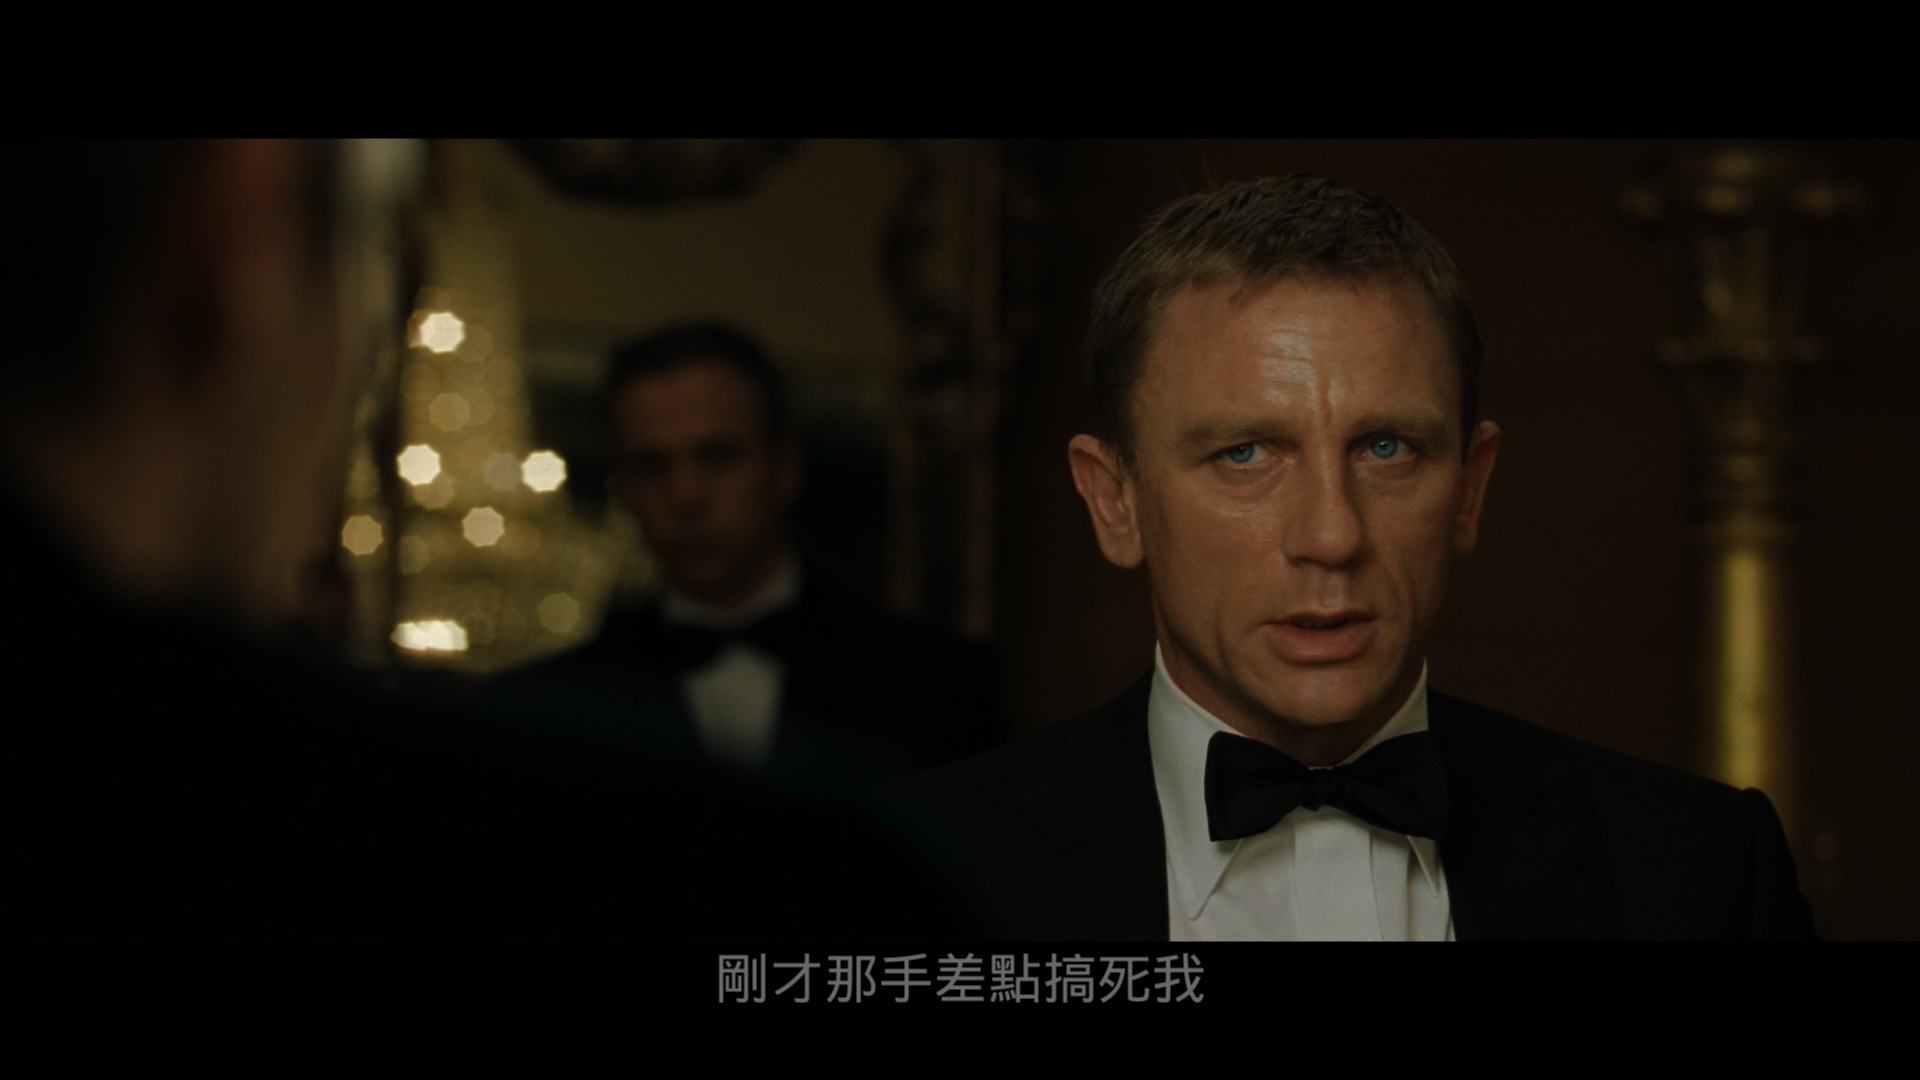 007系列21:大战皇家赌场[DIY简繁/简繁双语字幕][保留dolby vision] 4K UHD原盘 [自看版] Casino Royale 2006 2160p UHD Blu-ray HEVC DTS-HD MA 5.1-wezjh@OurBits    [53.39 GB ]-4.jpg